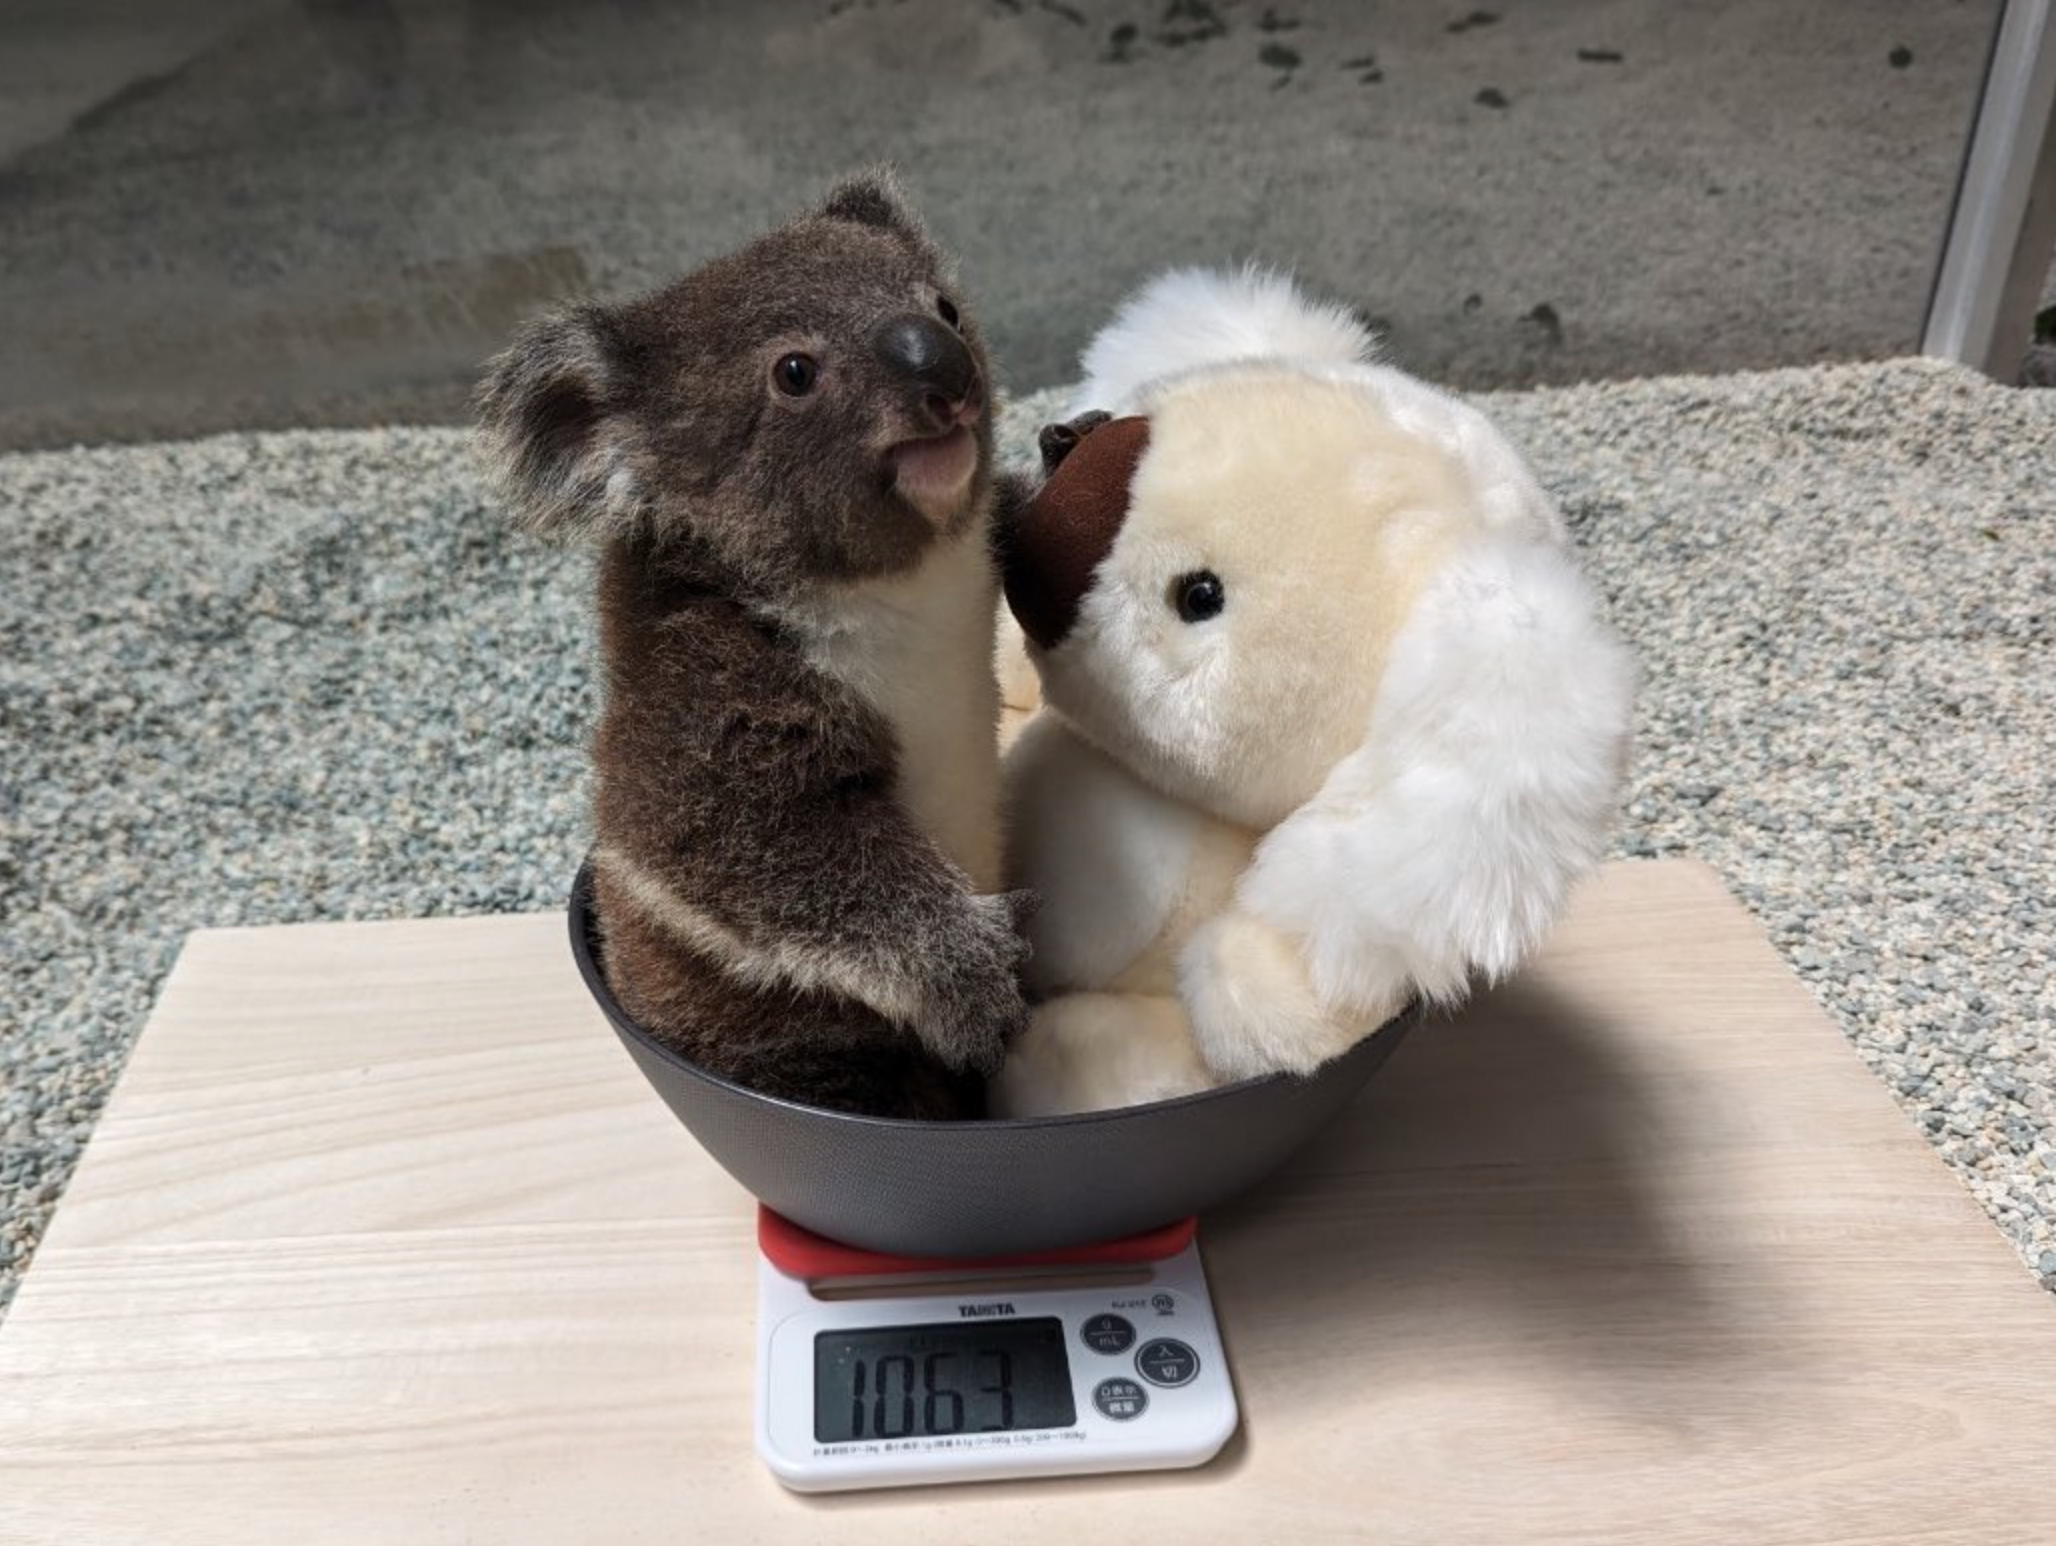 โคอาล่าชั่งน้ำหนักพร้อมกับตุ๊กตา สวนสัตว์ญี่ปุ่น